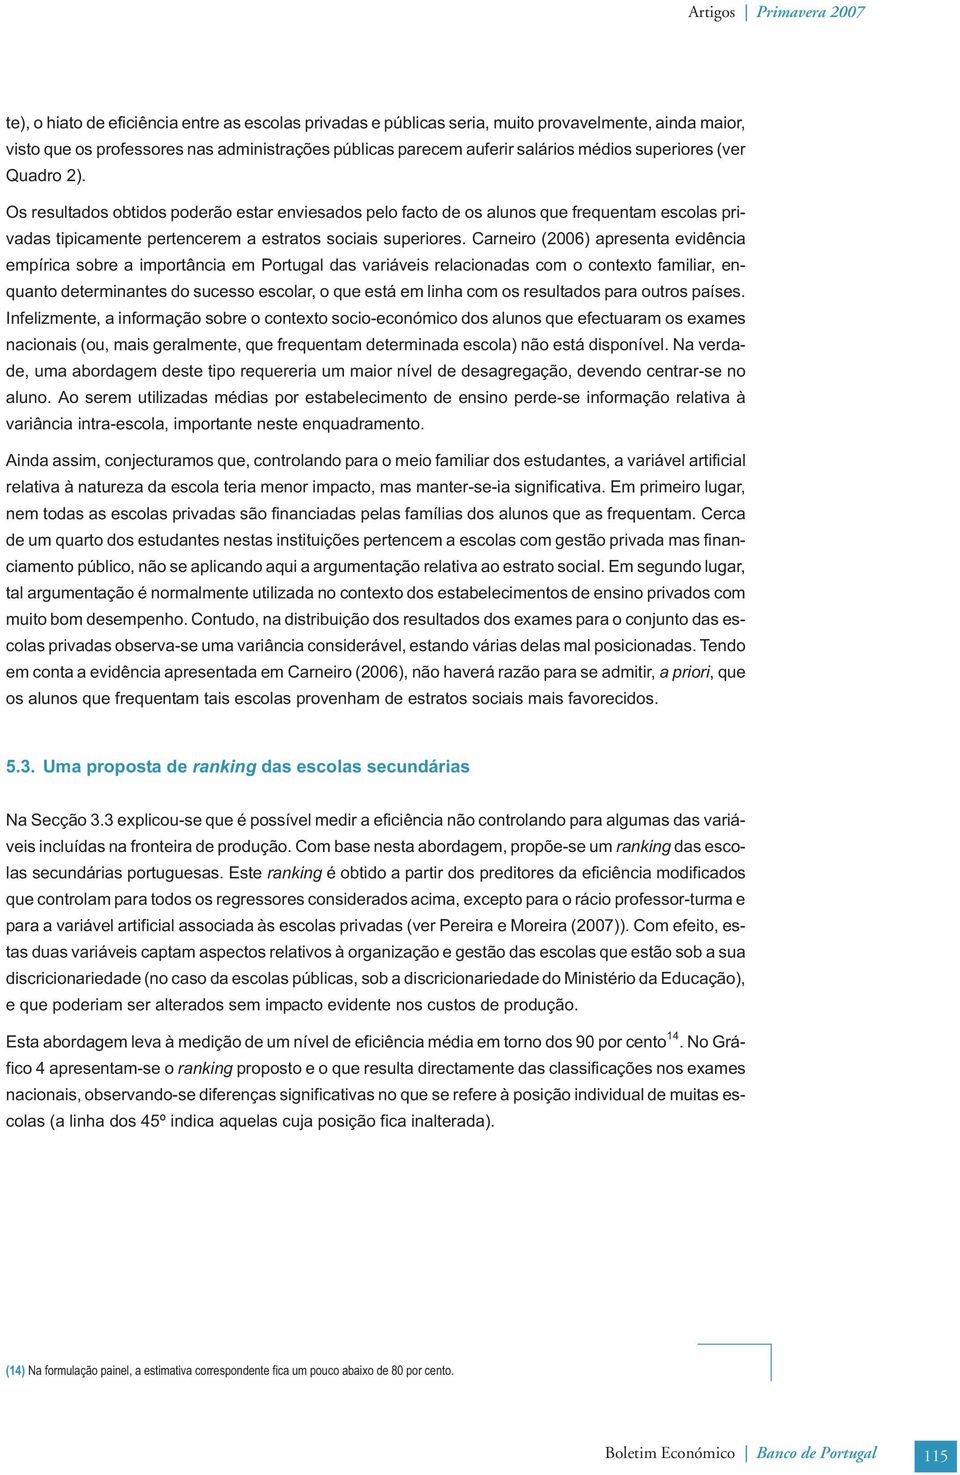 Carnero (2006) apresenta evdênca empírca sobre a mportânca em Portugal das varáves relaconadas com o contexto famlar, enquanto determnantes do sucesso escolar, o que está em lnha com os resultados